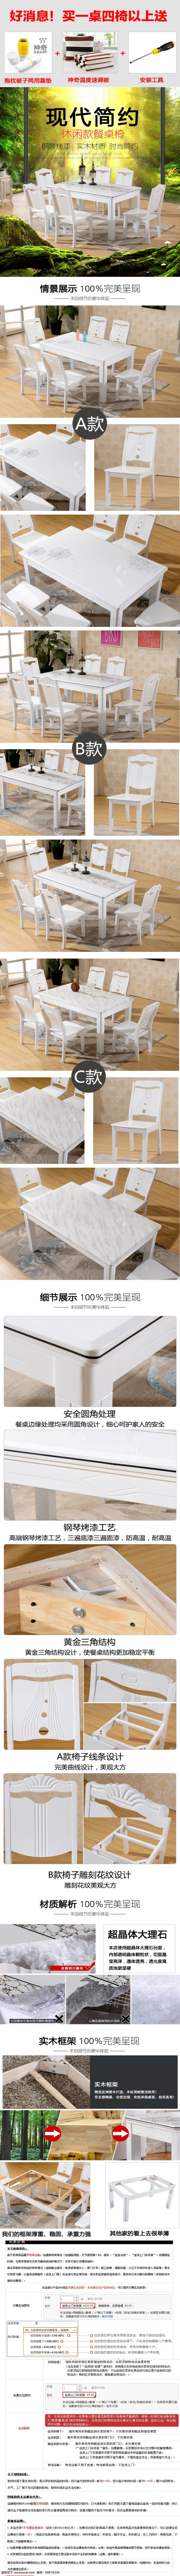 餐桌 椅子 组合 详情 大理石面板 实木框架 橡木椅子